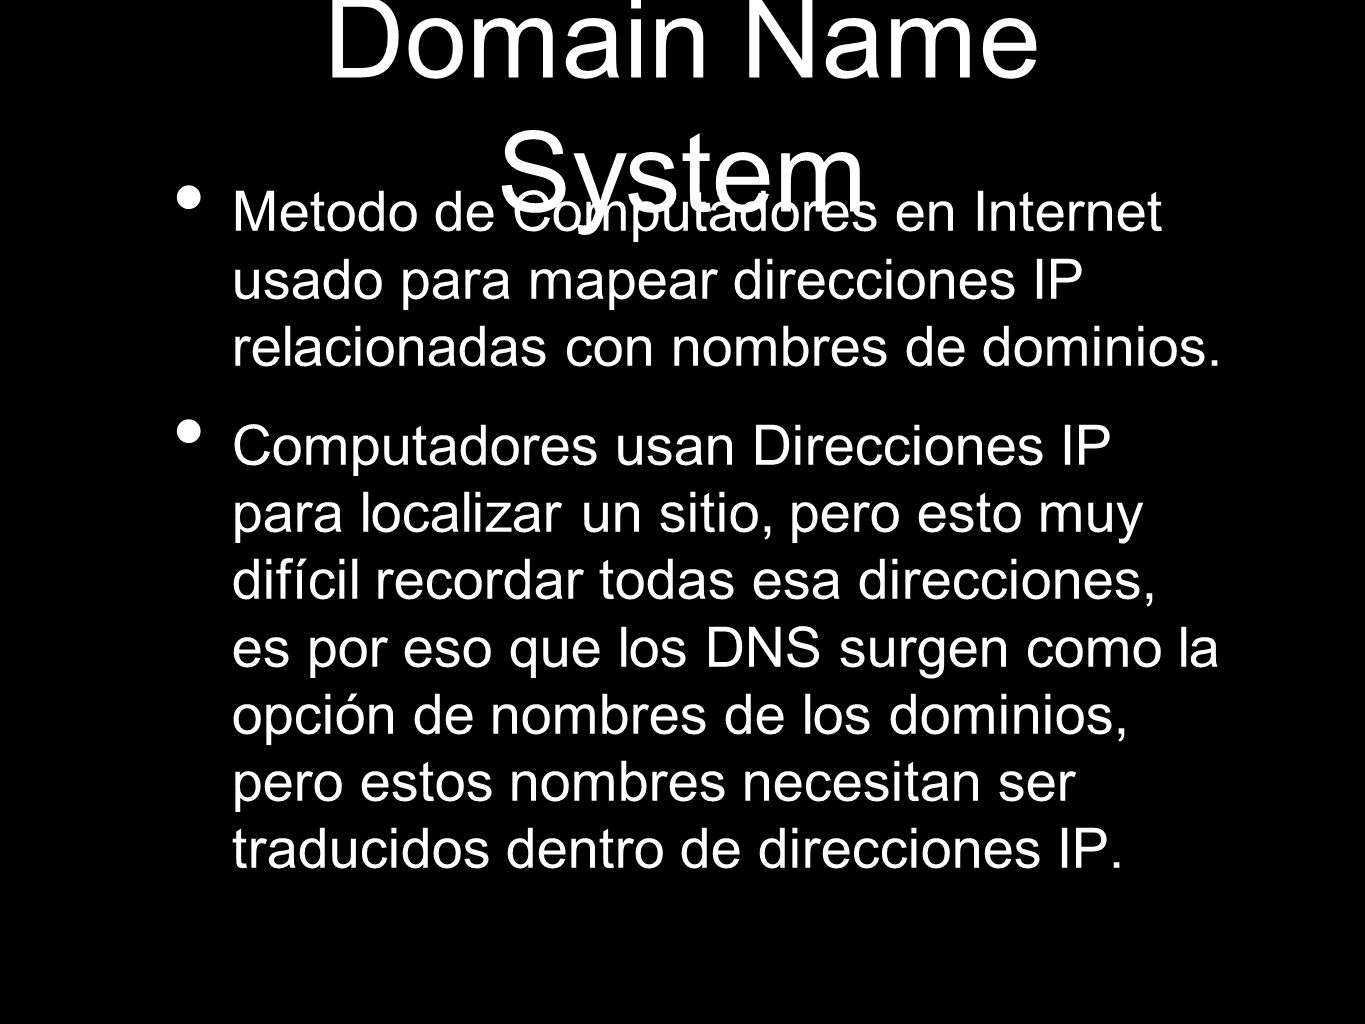 Domain Name System Metodo de Computadores en Internet usado para mapear direcciones IP relacionadas con nombres de dominios.